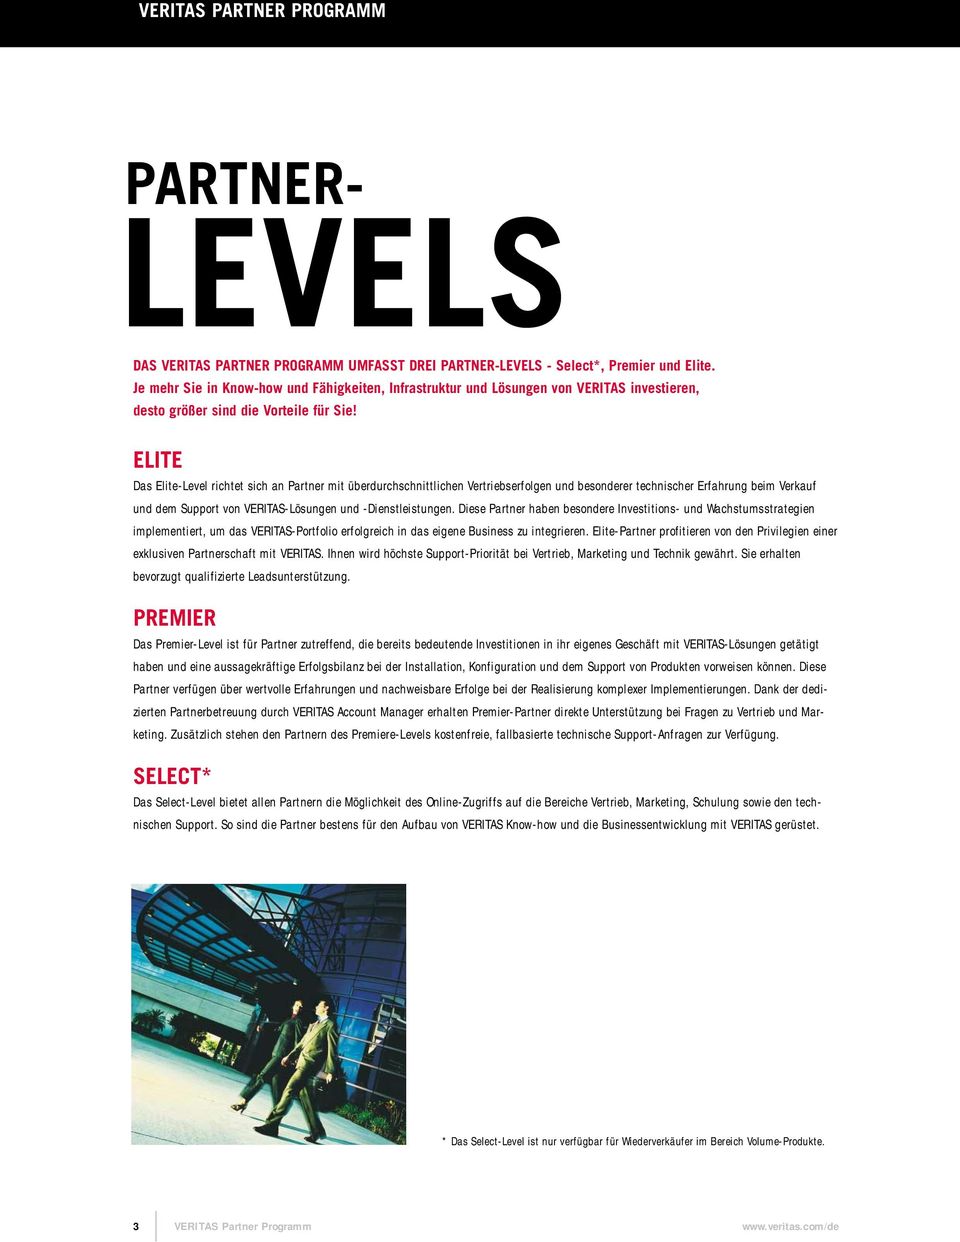 ELITE Das Elite-Level richtet sich an Partner mit überdurchschnittlichen Vertriebserfolgen und besonderer technischer Erfahrung beim Verkauf und dem Support von VERITAS-Lösungen und -Dienstleistungen.